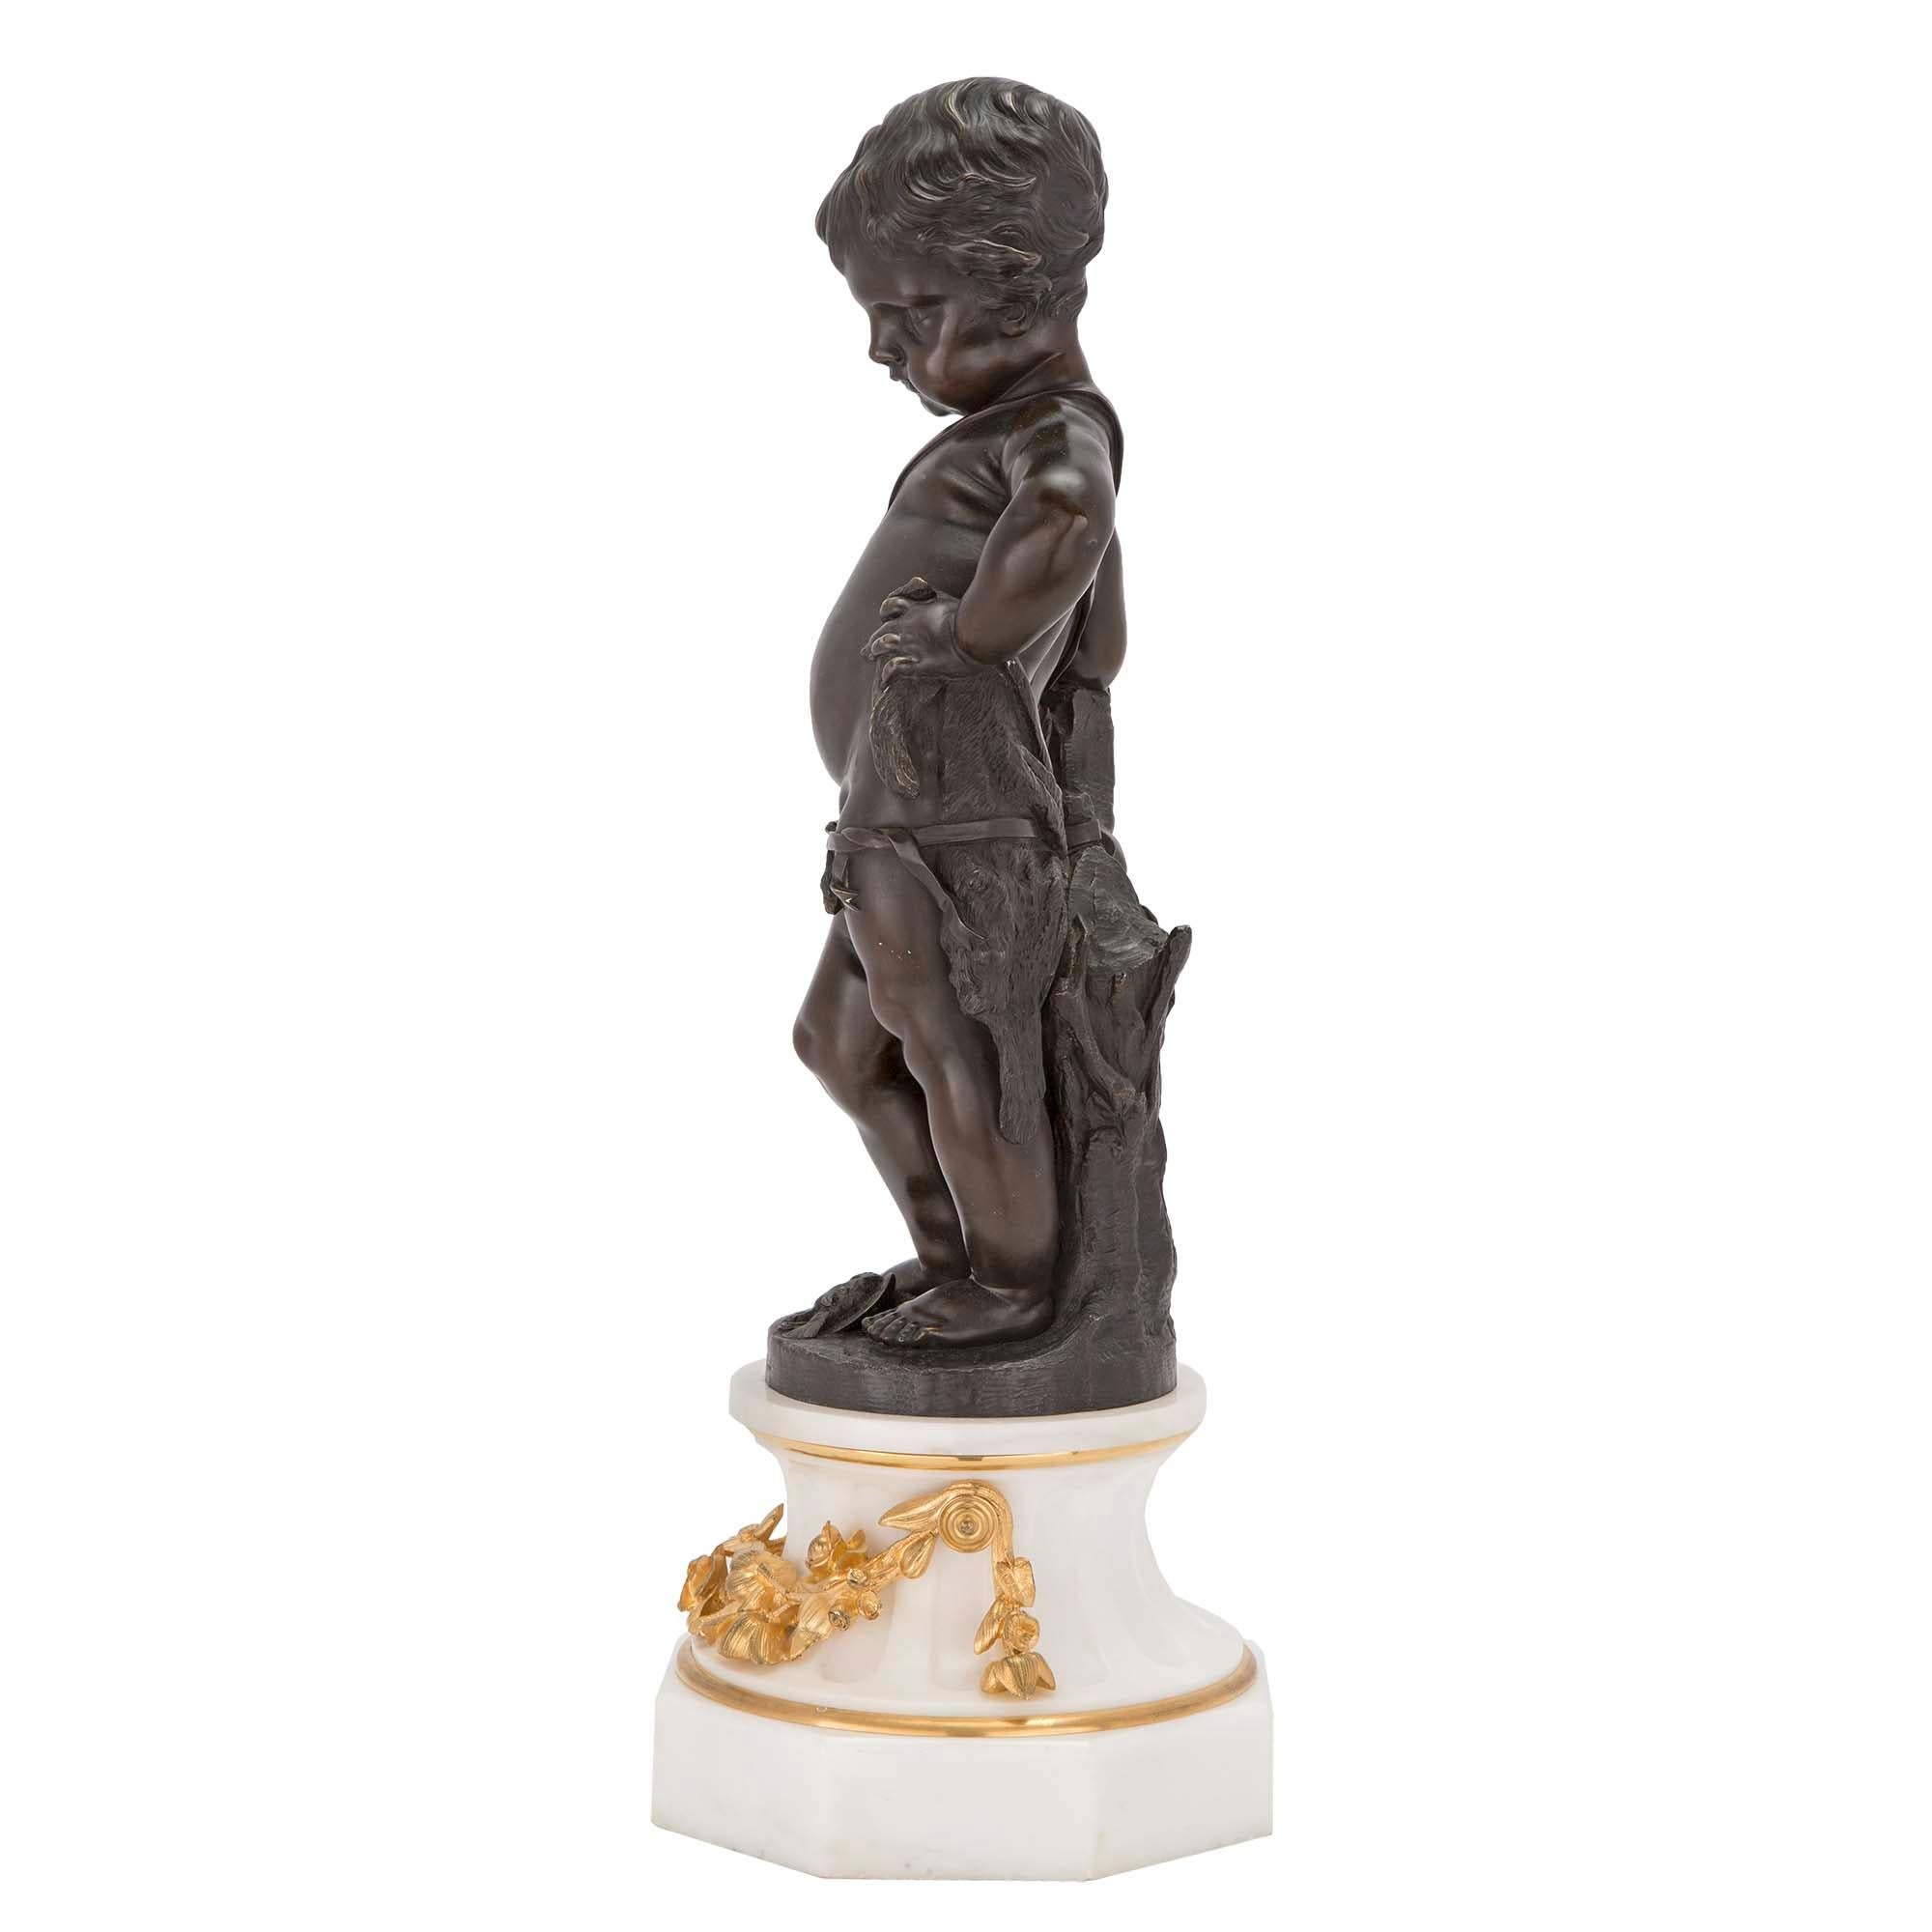 Charmant putti en bronze patiné de style Louis XVI du XIXe siècle, en robe de chasse. La statue repose sur une très élégante base octogonale en marbre blanc de Carrare qui se rétrécit jusqu'à un socle cannelé décoré de guirlandes florales en bronze